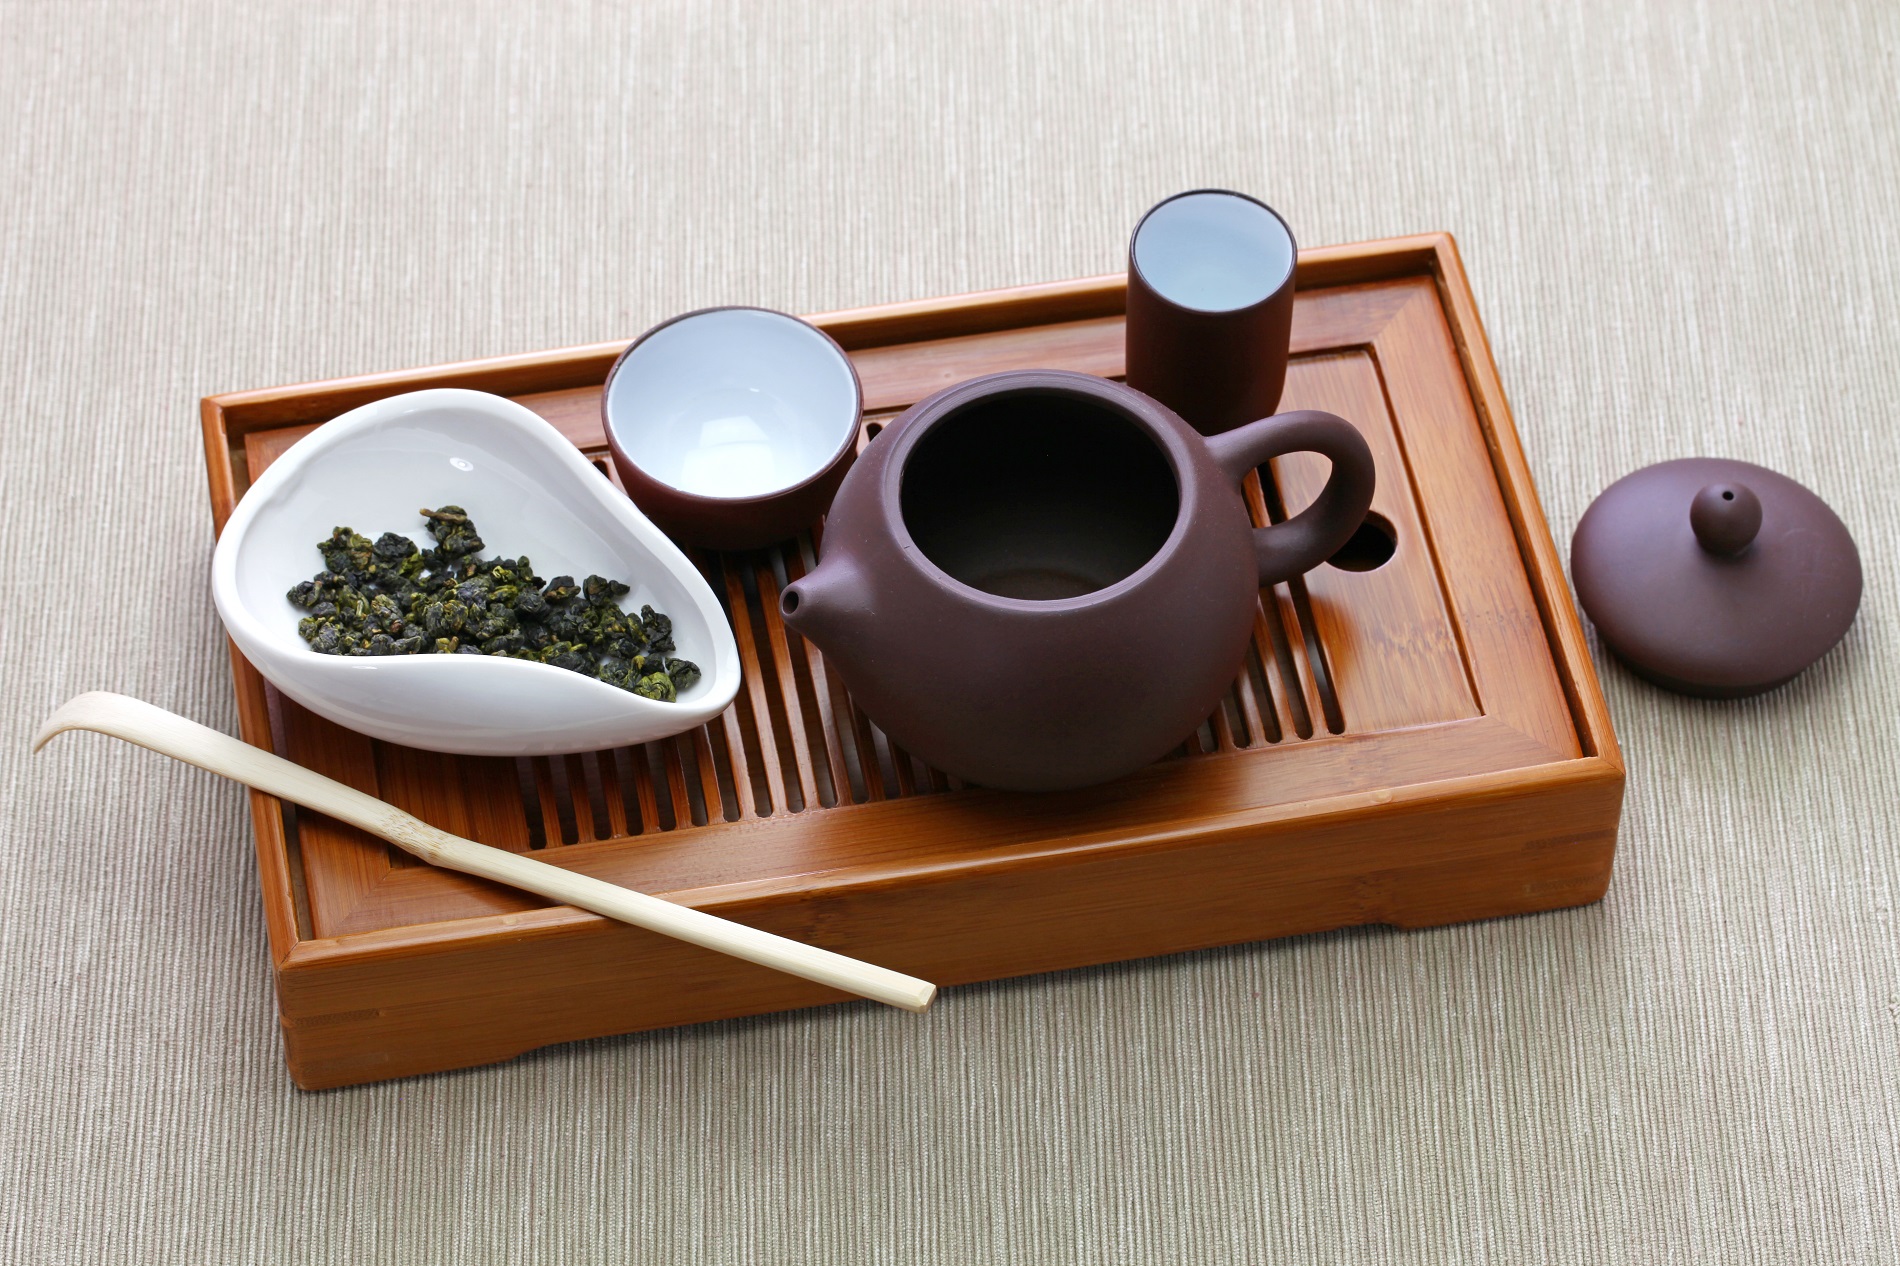 Quy trình sản xuất trà Ô long đạt chuẩn - Máy sấy khô trà khay xoay tròn tự động